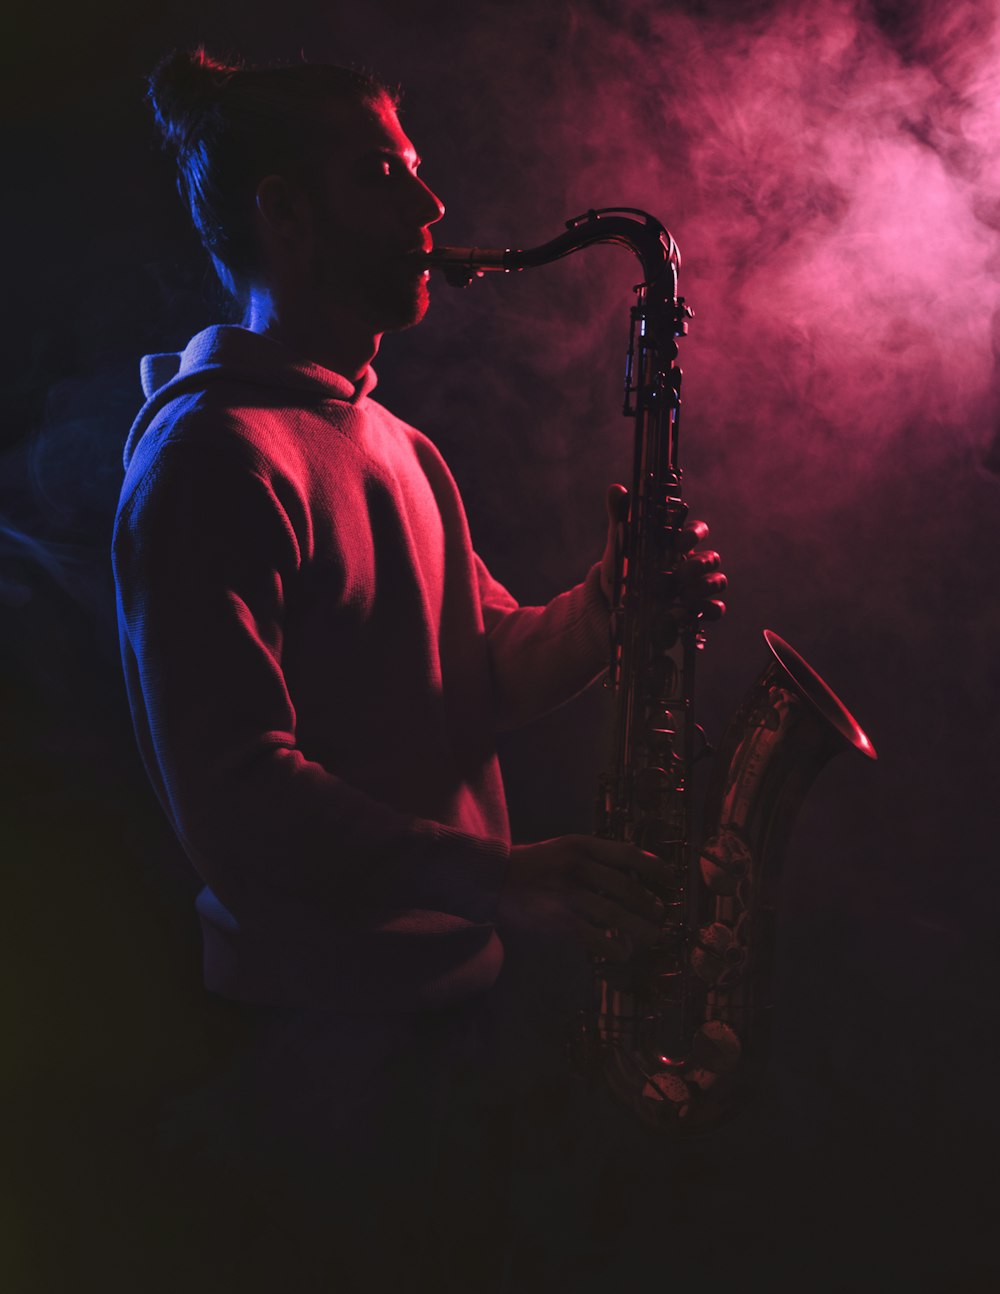 Un uomo che suona un sassofono in una stanza buia